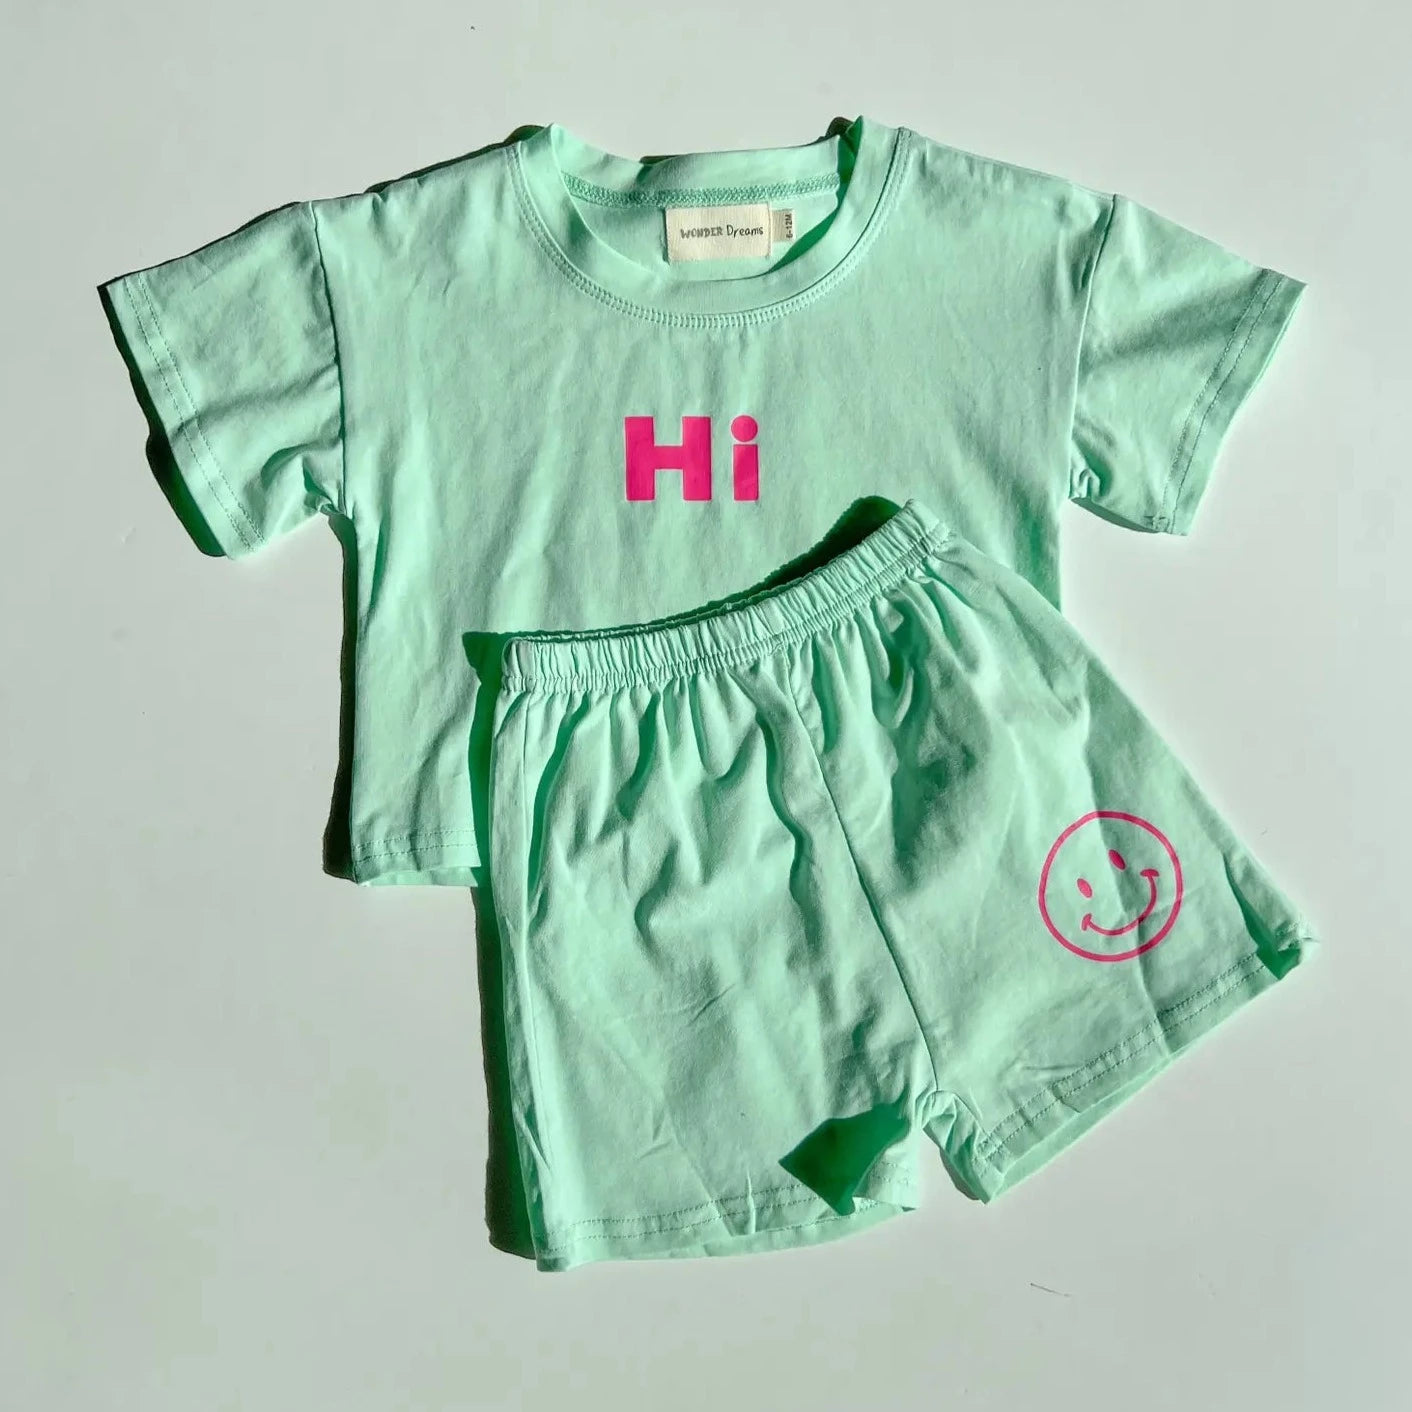 "Hi" Smiley T-Shirt and Short Set